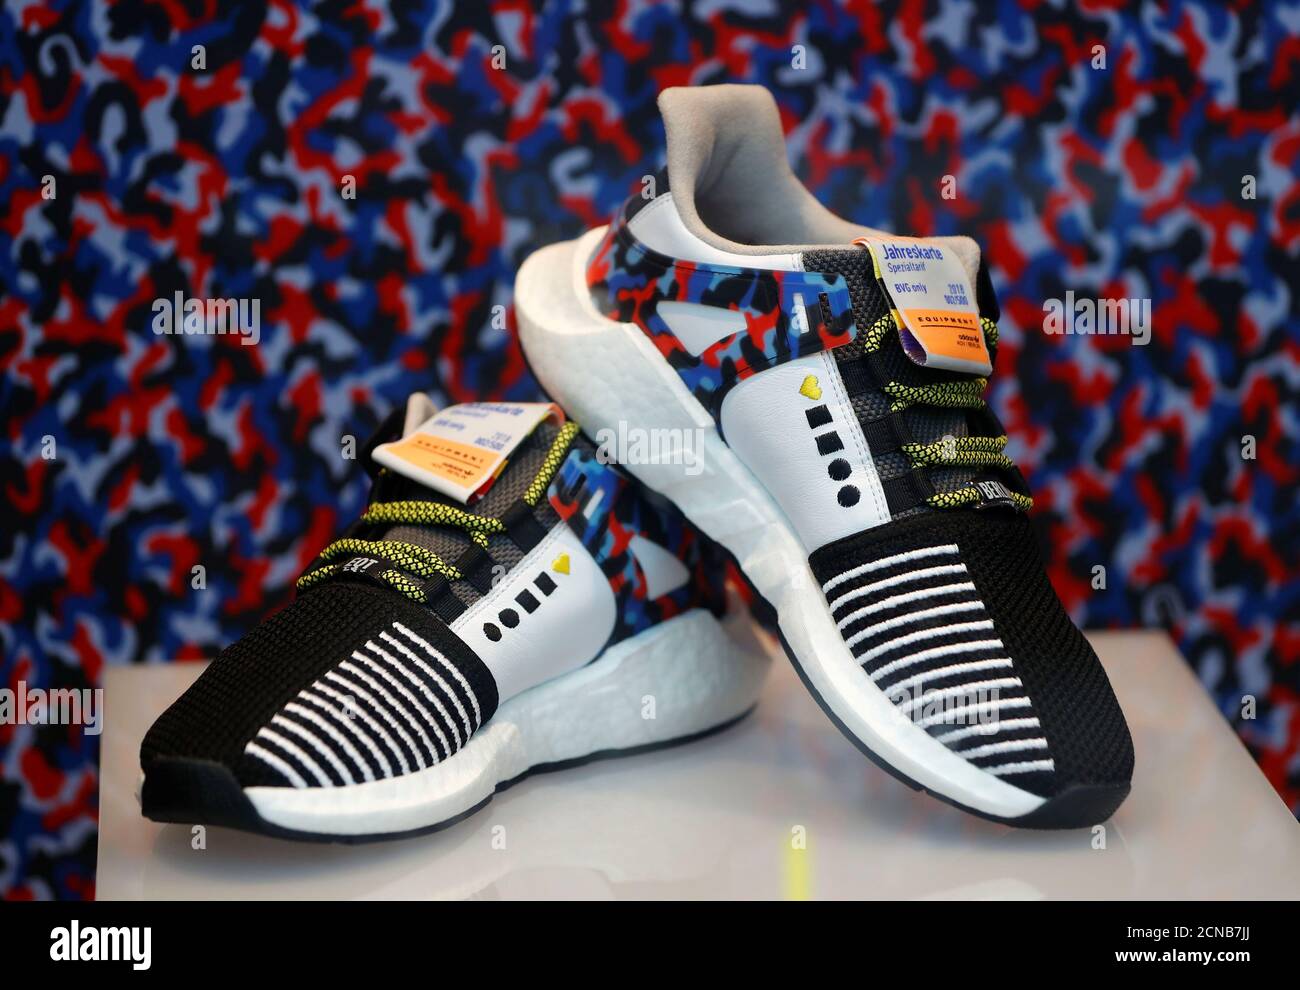 Die Adidas Limited-Edition Sneaker, die zum Berliner U-Bahn-Sitzdesign  passen und einen Jahresreisepass enthalten, werden am 16. Januar 2018 im  Schuhgeschäft "Overkill" in Berlin ausgestellt. REUTERS/Fabrizio Bensch  Stockfotografie - Alamy